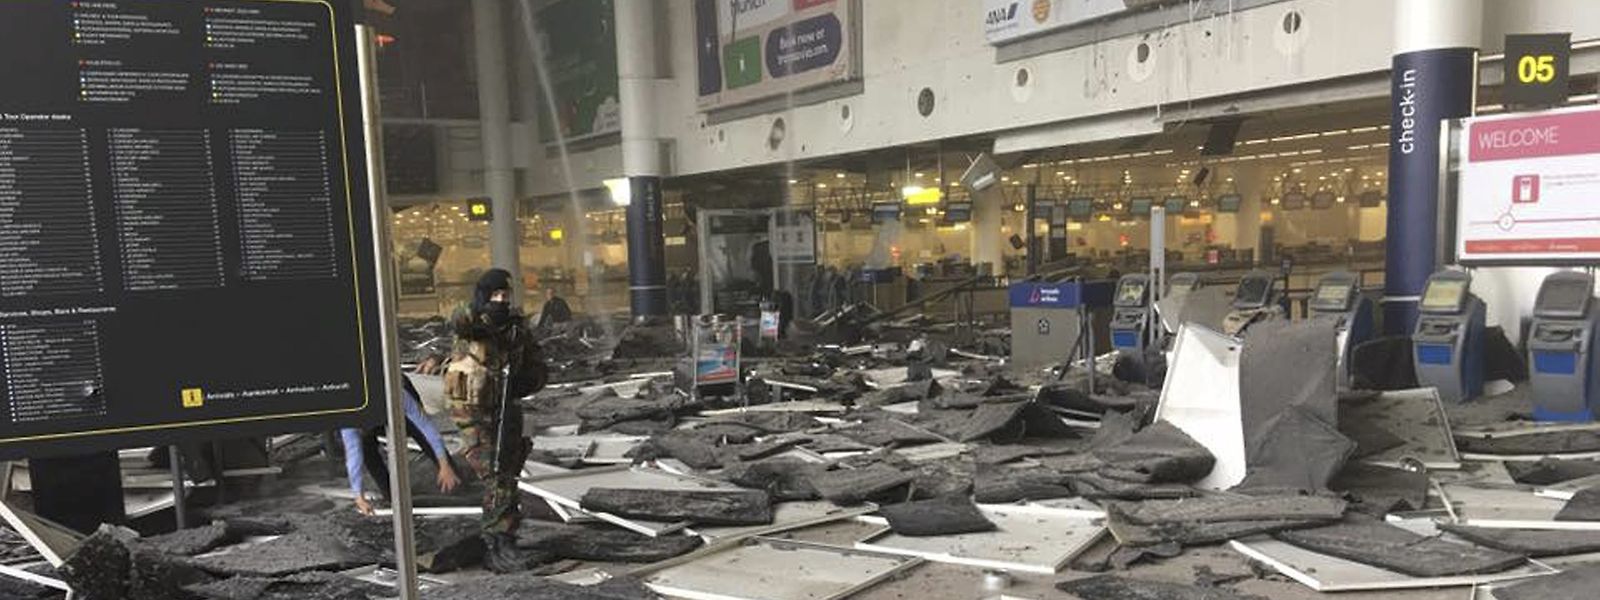 Le 22 mars 2016, les attentats à l'aéroport de Zaventem et à la station métro de Maelbeek ont fait 32 tués et 340 blessés.

 